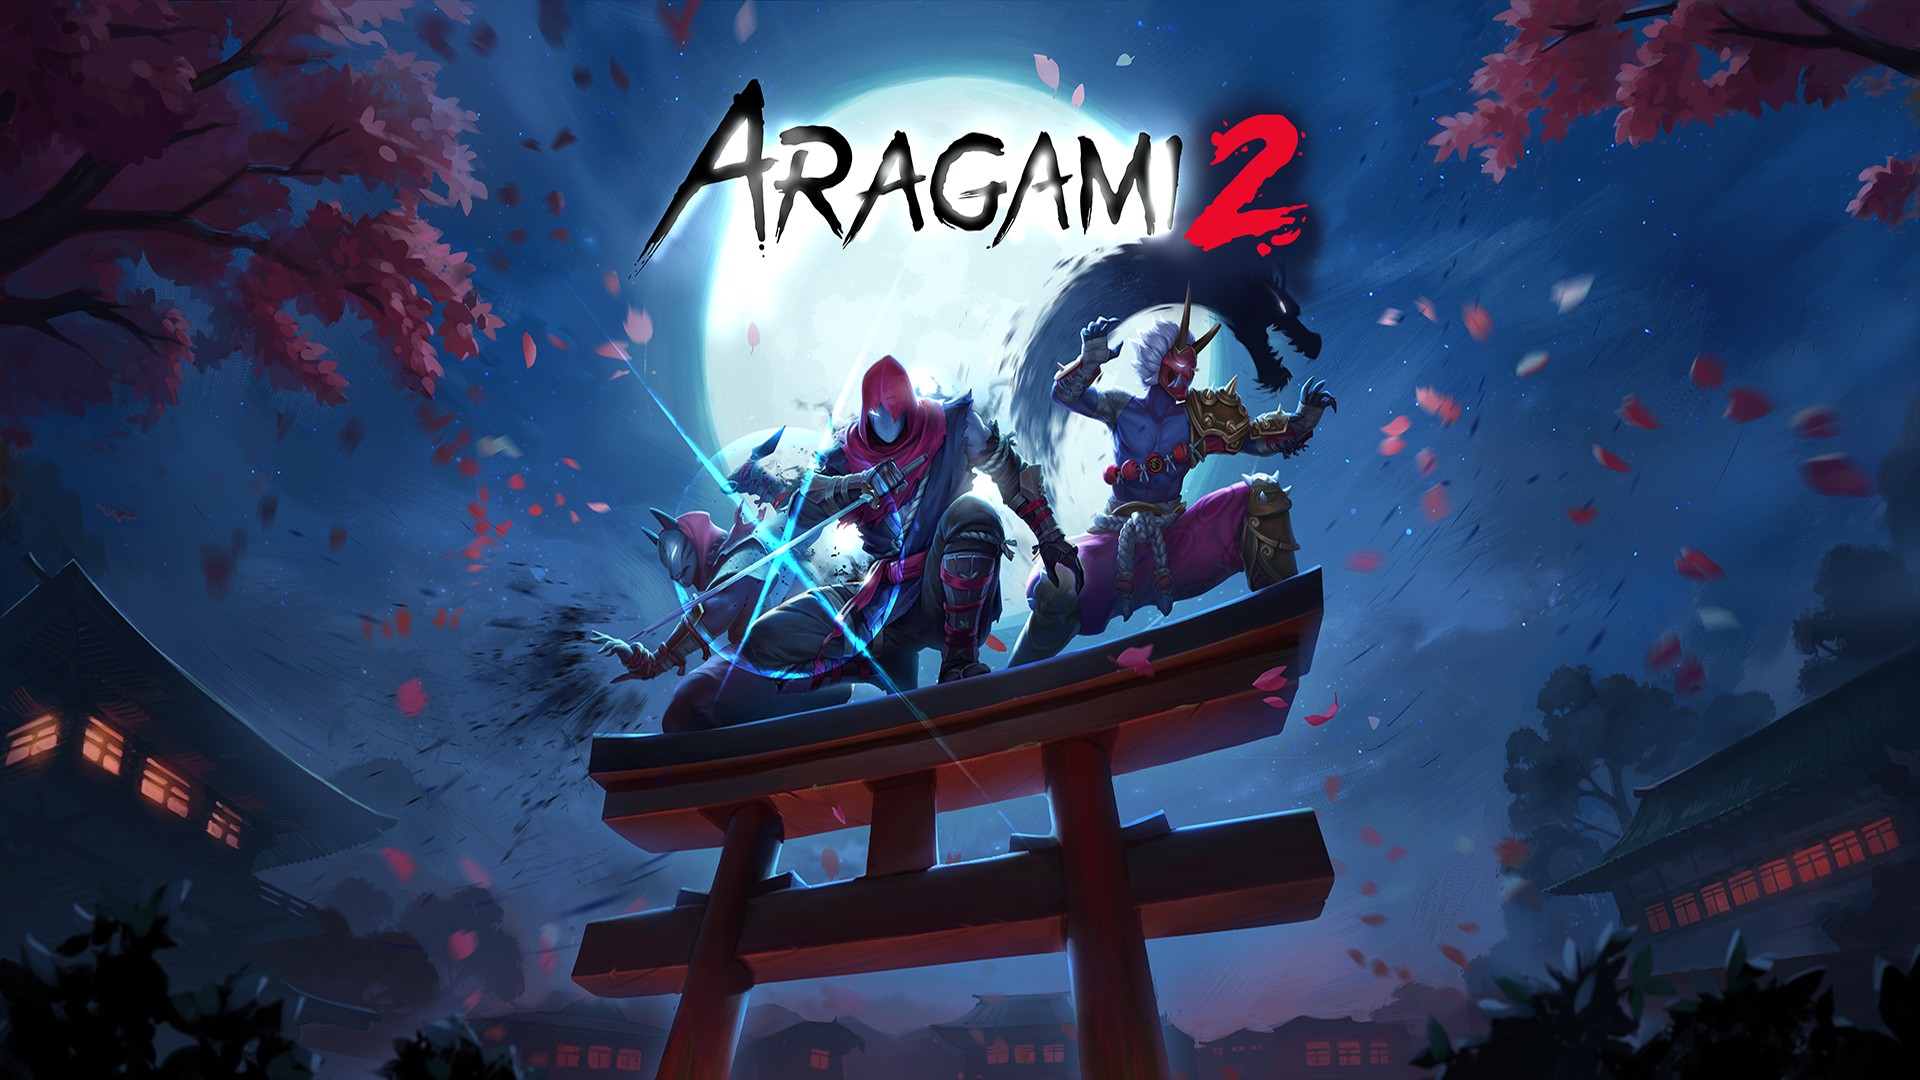 Обложка игры ARAGAMI 2. Герои игры ночью на фоне луны